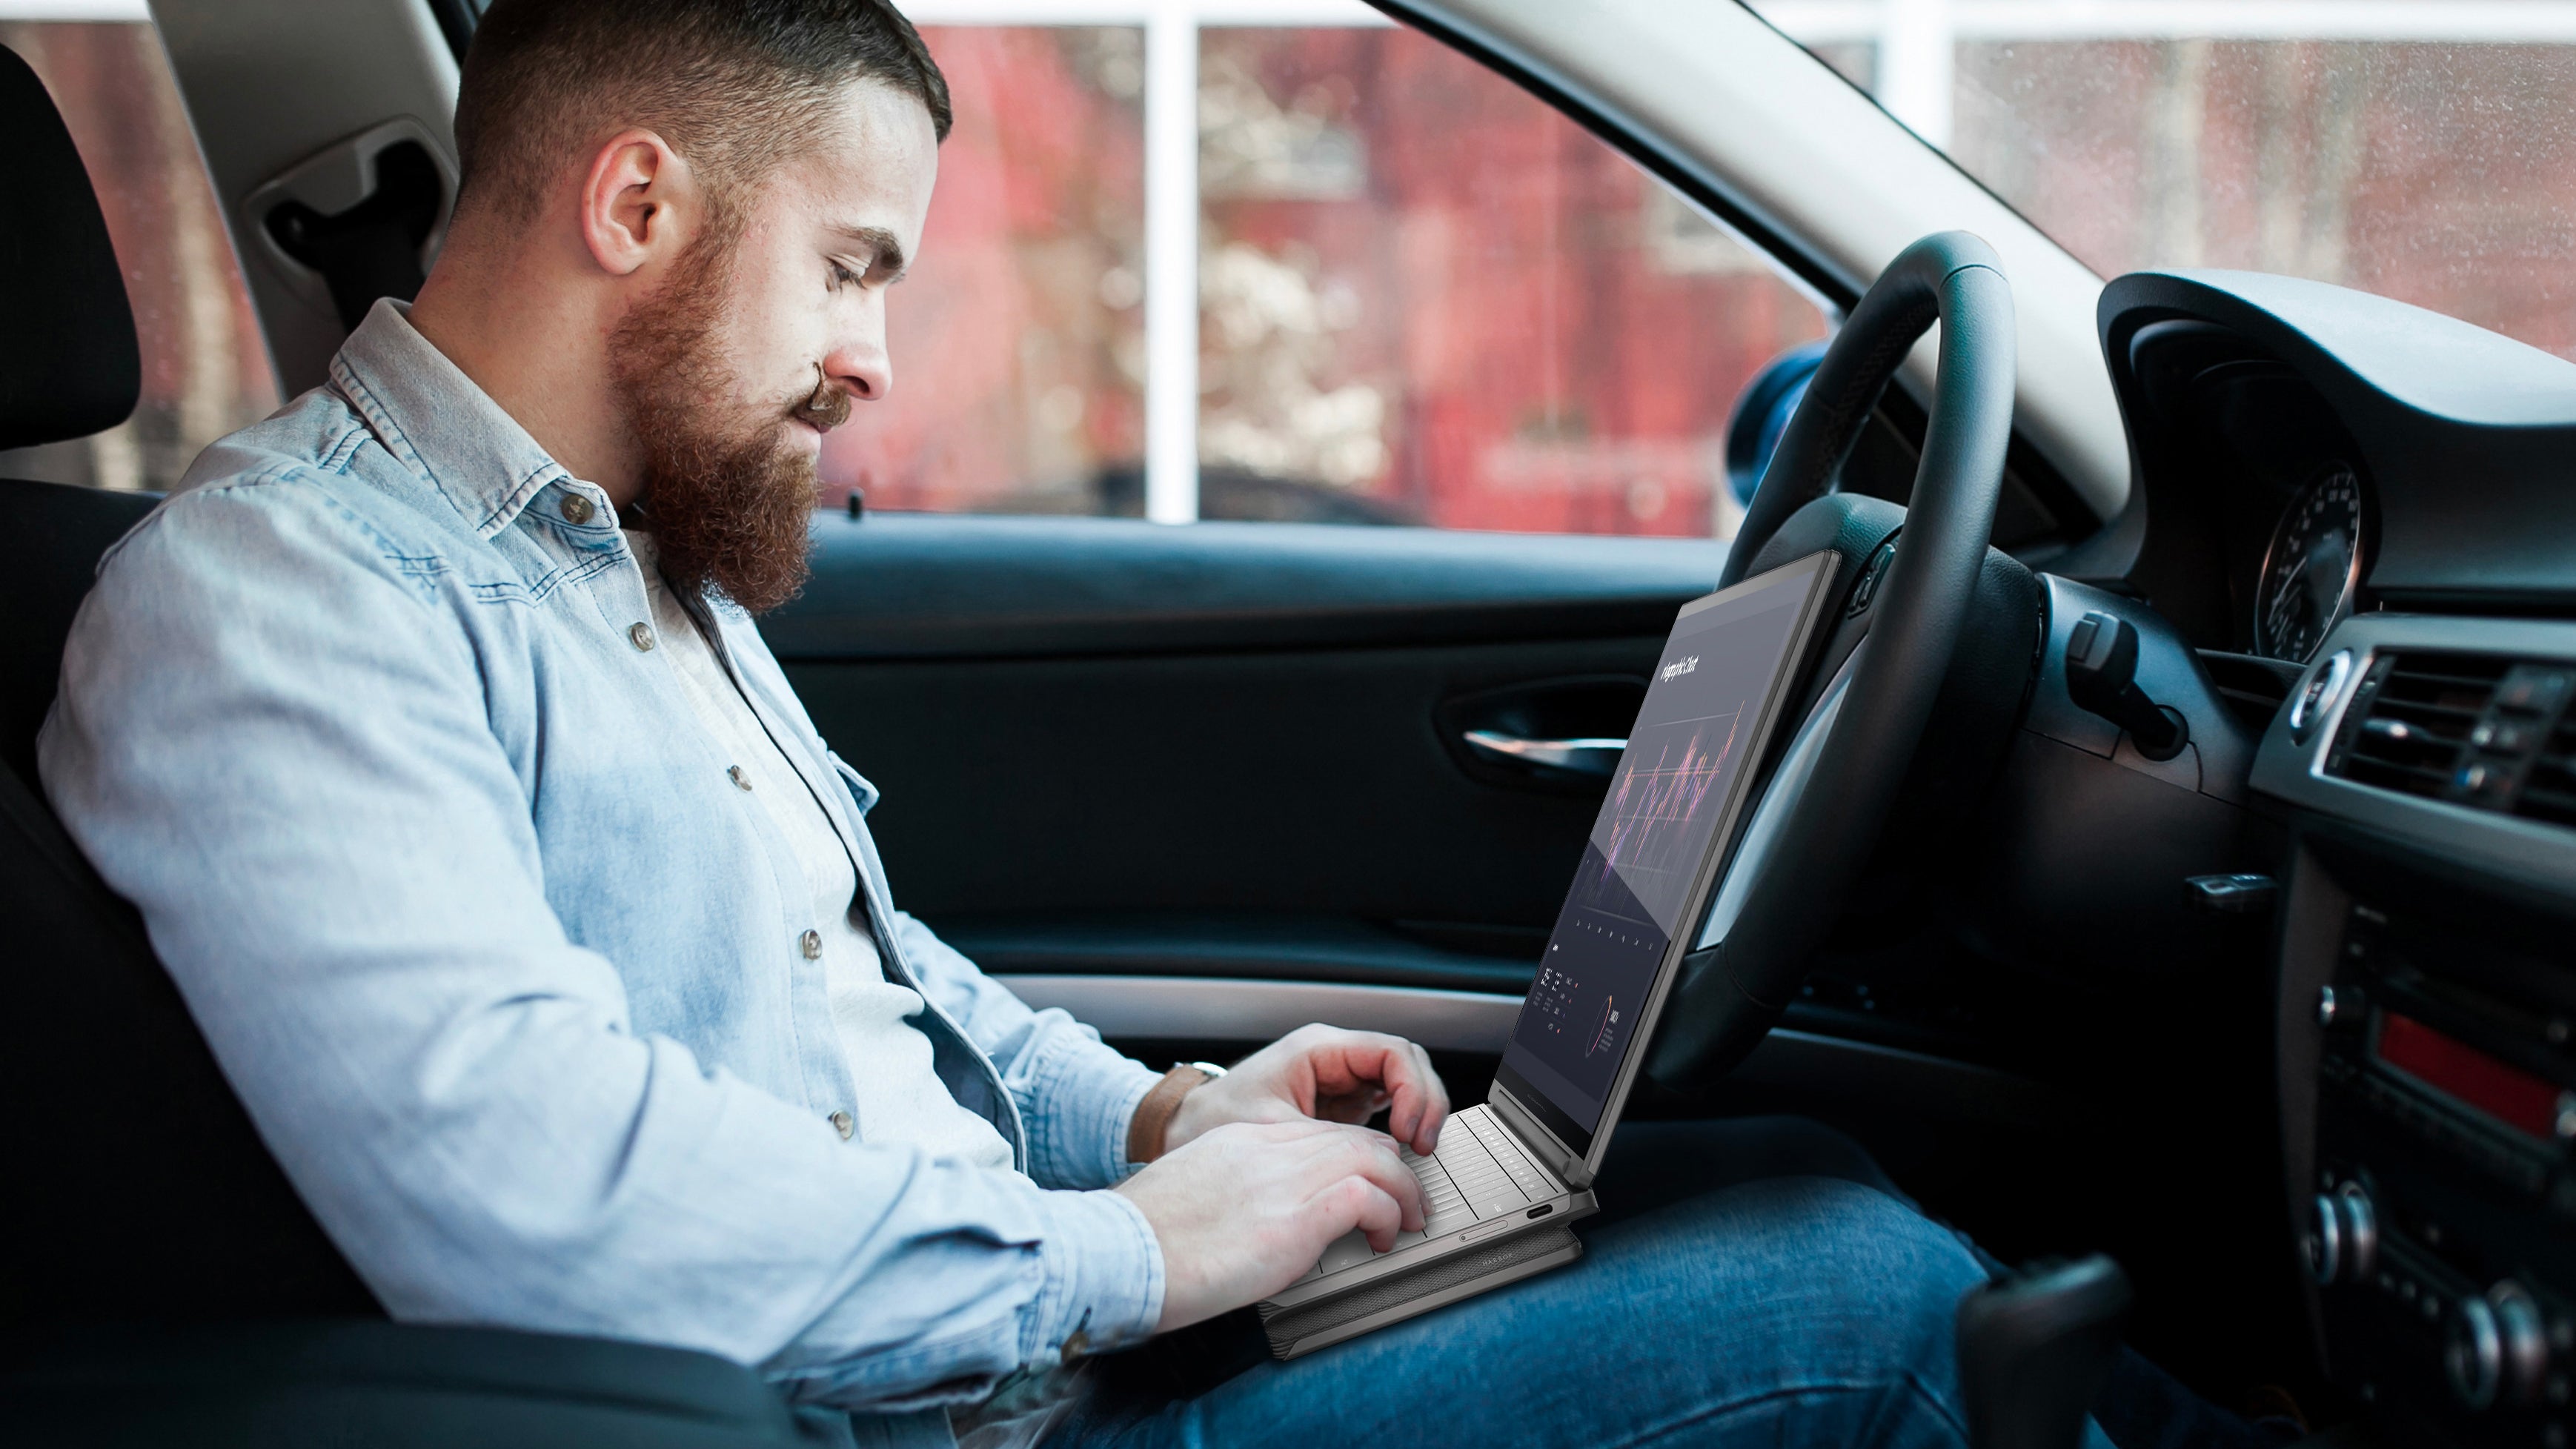 شخص يظهر باستخدام نموذج بالحجم الطبيعي للكمبيوتر المحمول مفهوم Compal Electronics Mobile Office أثناء جلوسه في مقعد السائق في السيارة.